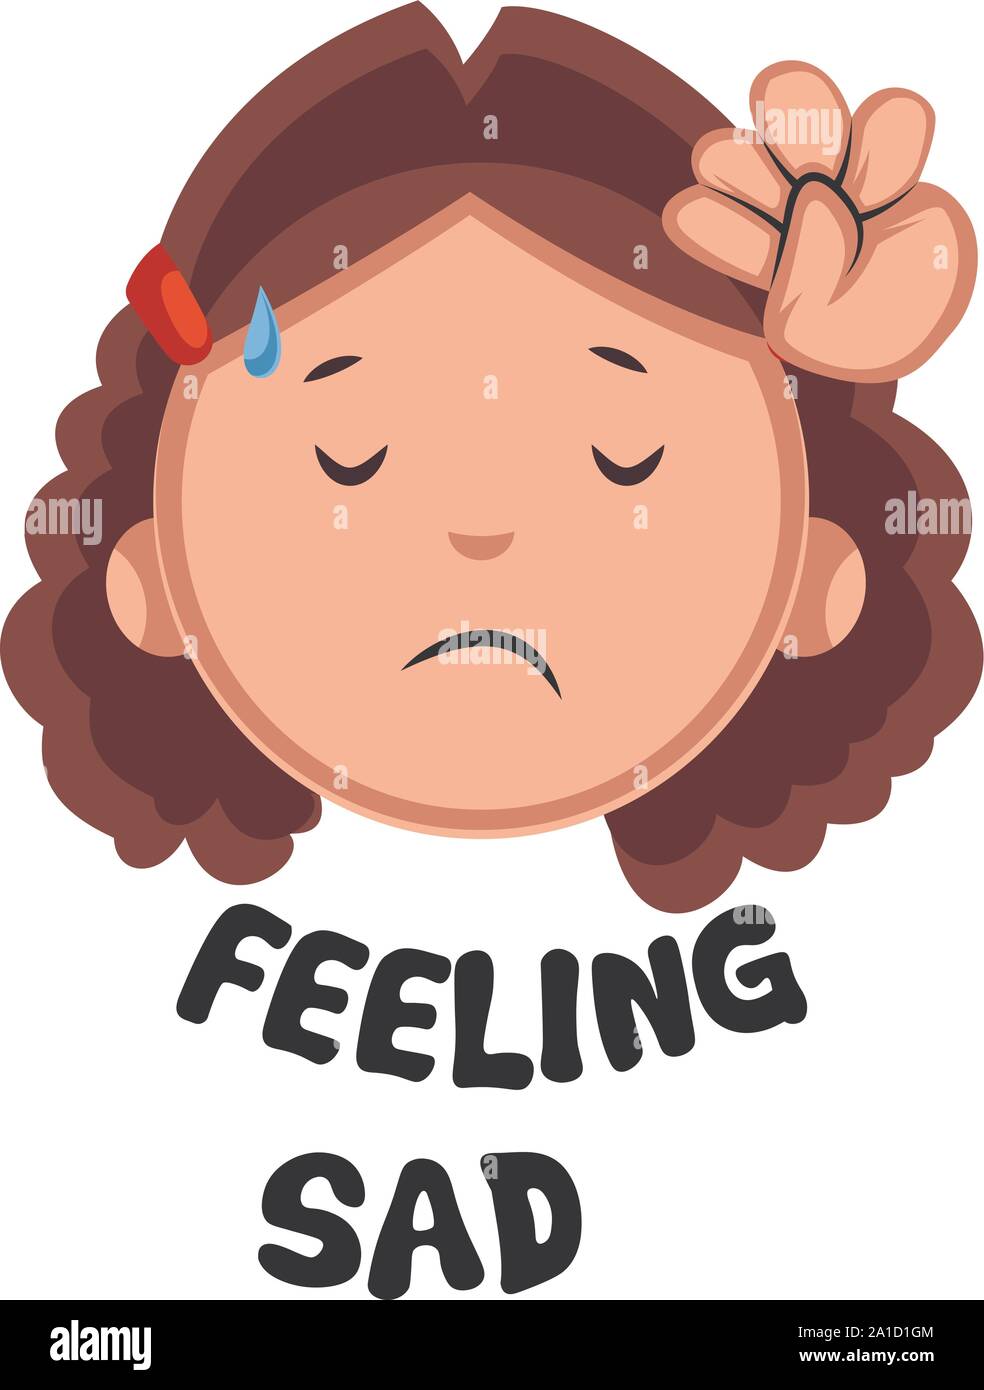 Girl feeling sad, illustration, vector on white background Stock ...